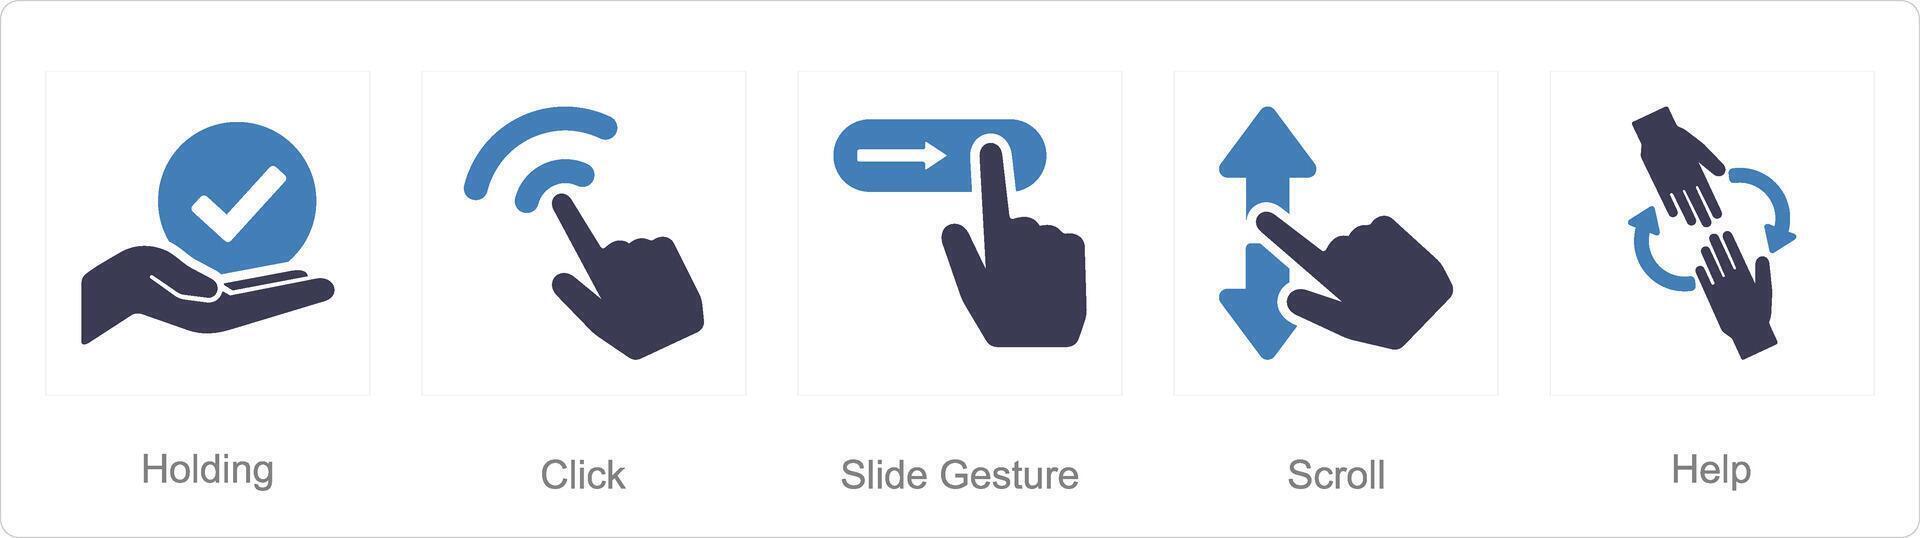 en uppsättning av 5 händer ikoner som innehav, klick, glida gest vektor